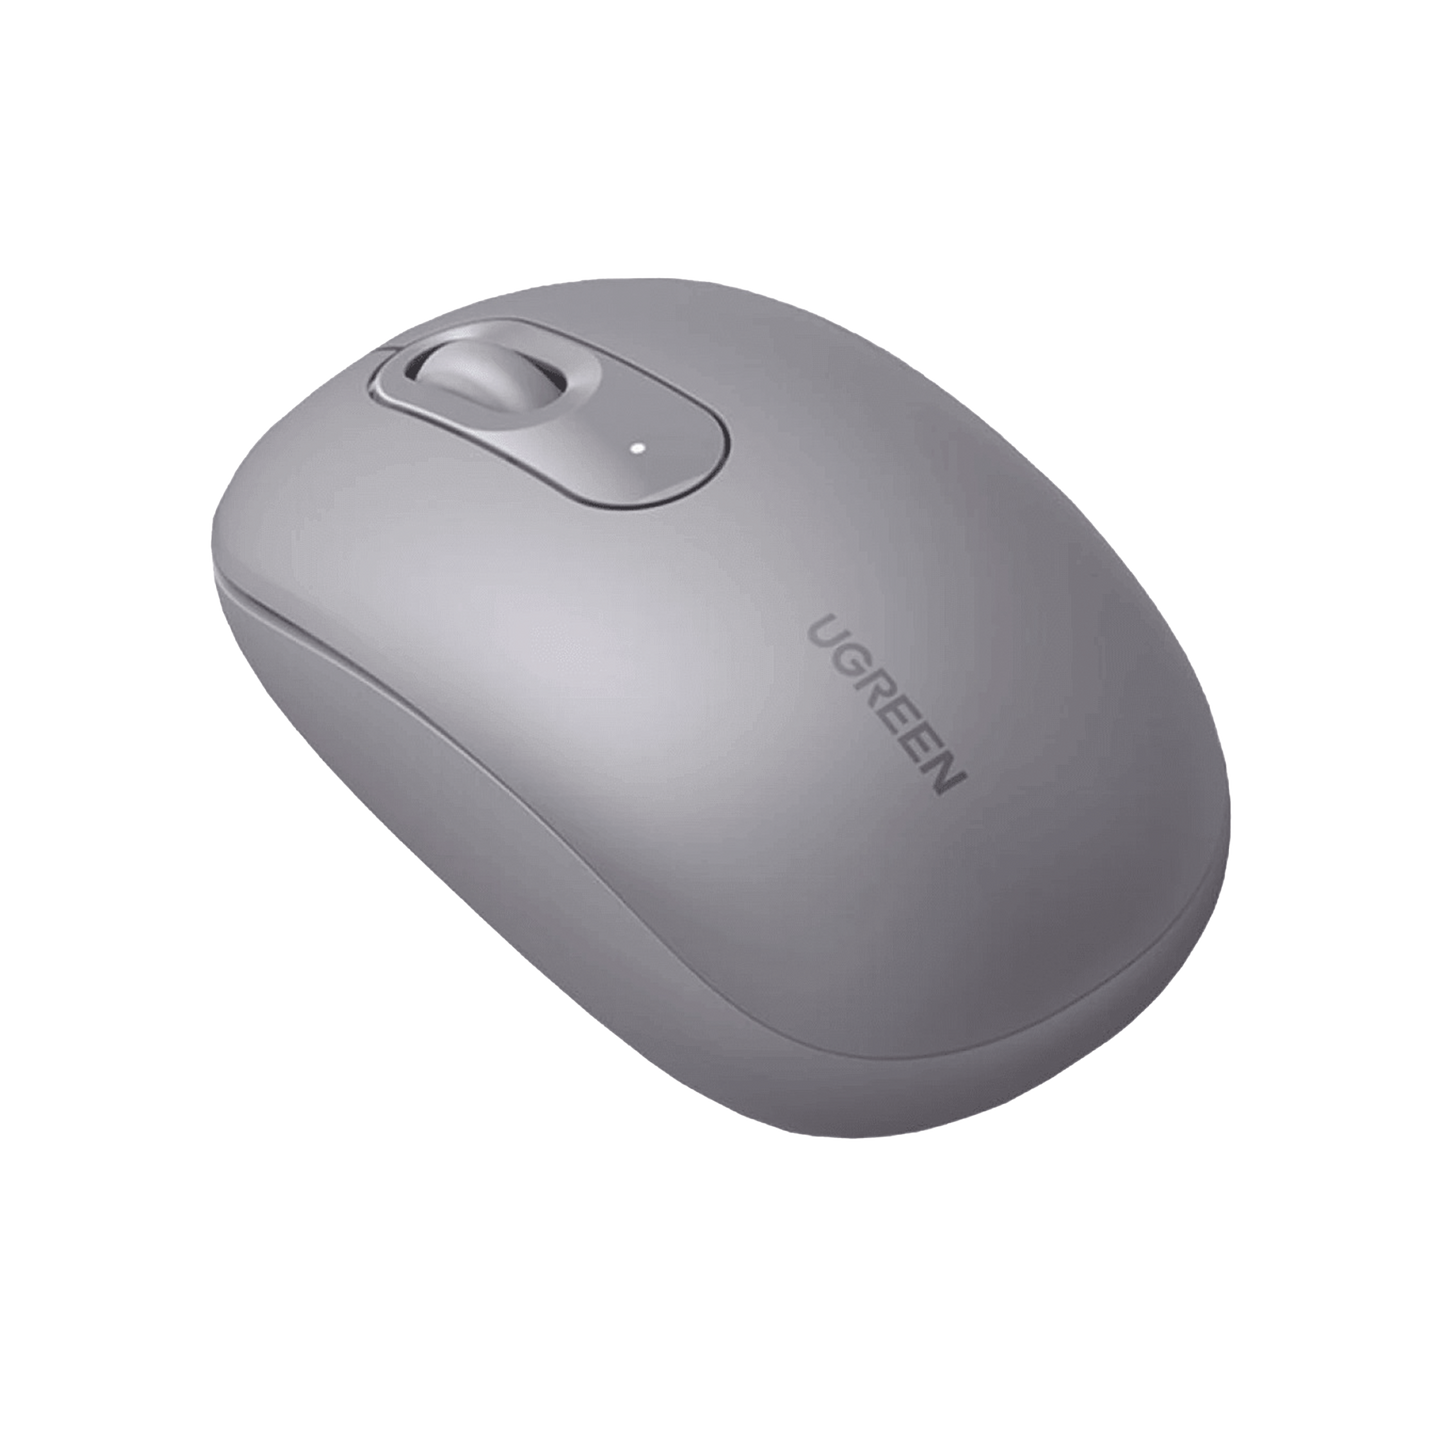 Mouse Inalámbrico 2.4G 800/1200/1600/2400 DPI / Función de 3 botones / Alcance 10m / Silencioso / Ergonómico / Anti-caída y Anti-interferencias / Color Gris / Batería Alcalina AA (incluida).